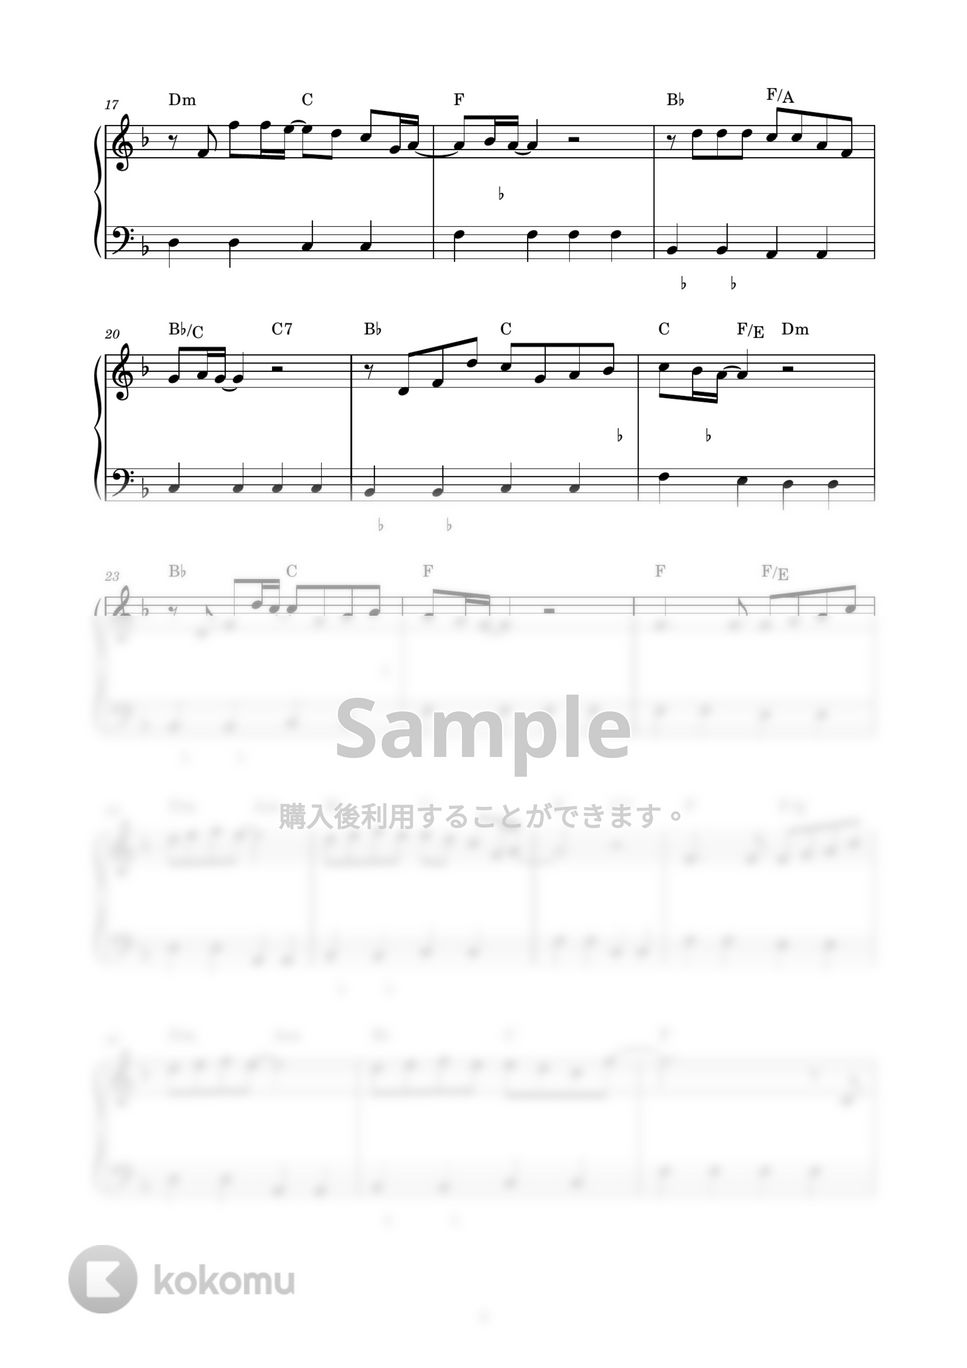 チューリップ - 心の旅 (ピアノ楽譜 / かんたん両手 / 歌詞付き / ドレミ付き / 初心者向き) by piano.tokyo